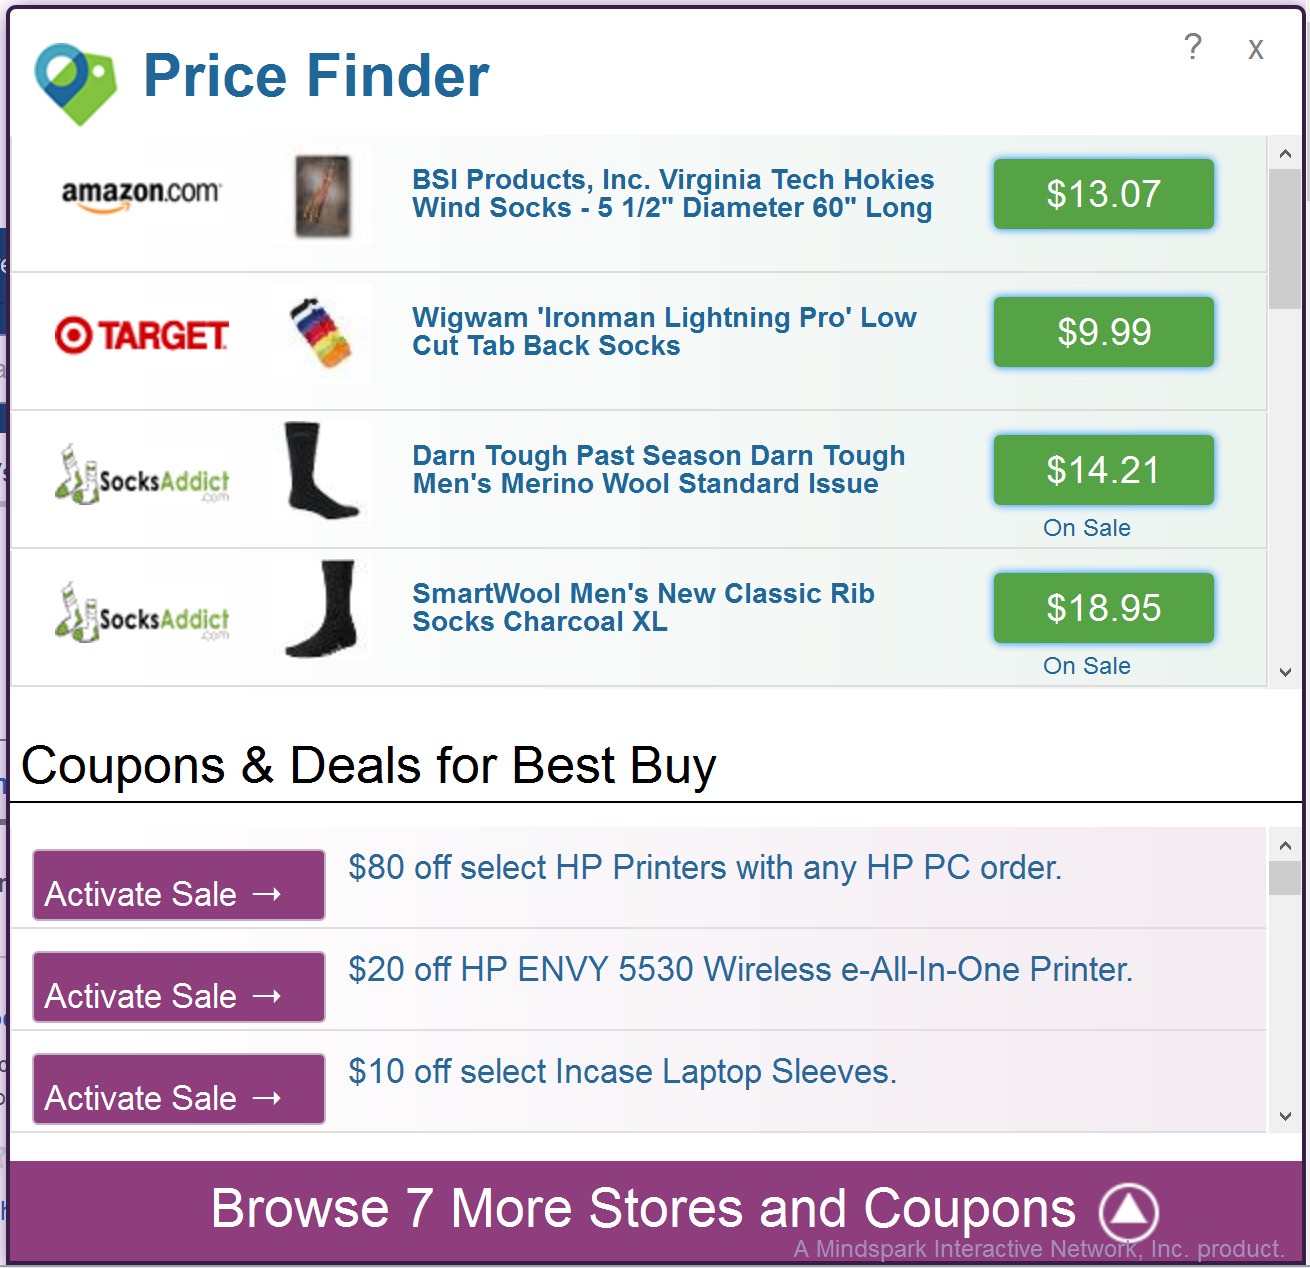 Price Finder advertisements